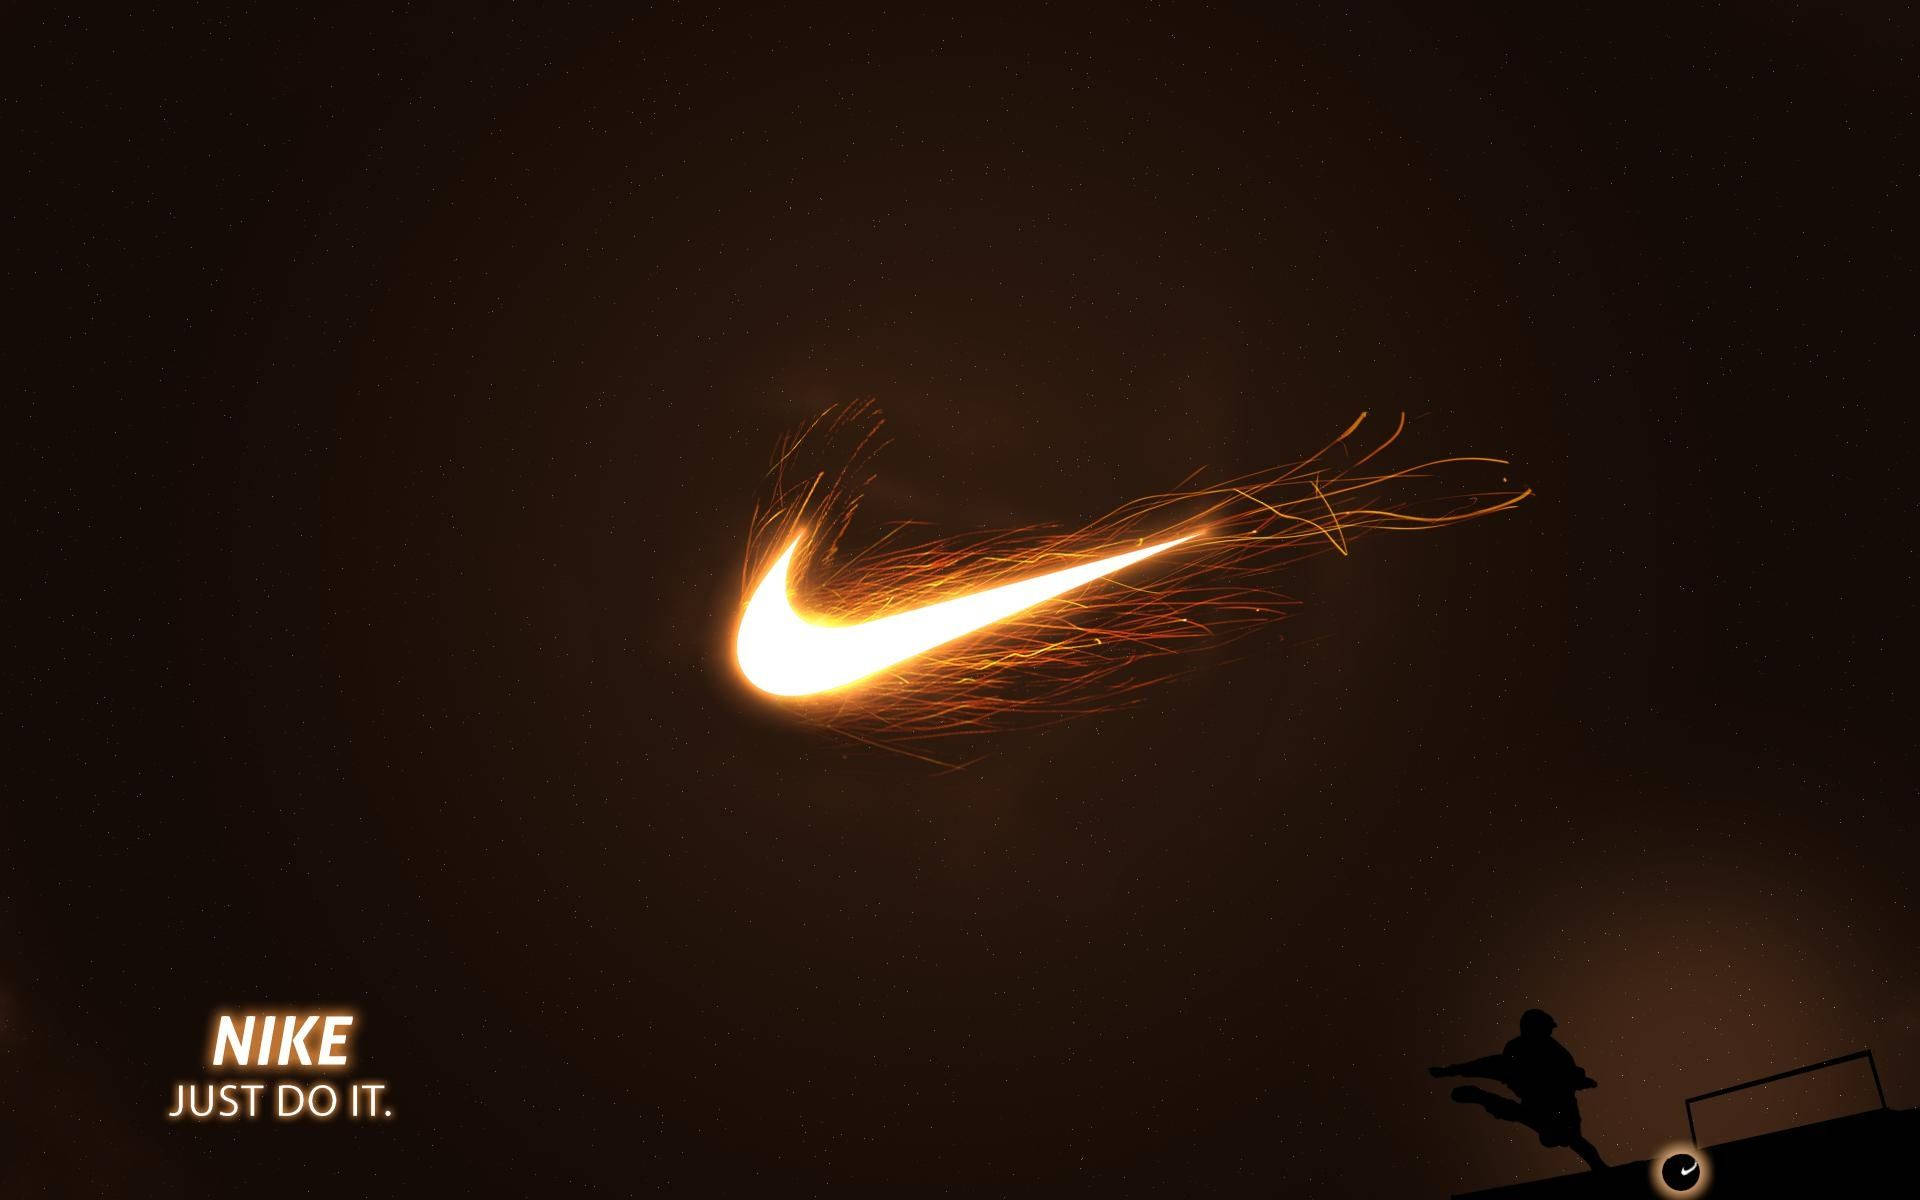 Logotipode Nike De Béisbol Genial Fondo de pantalla